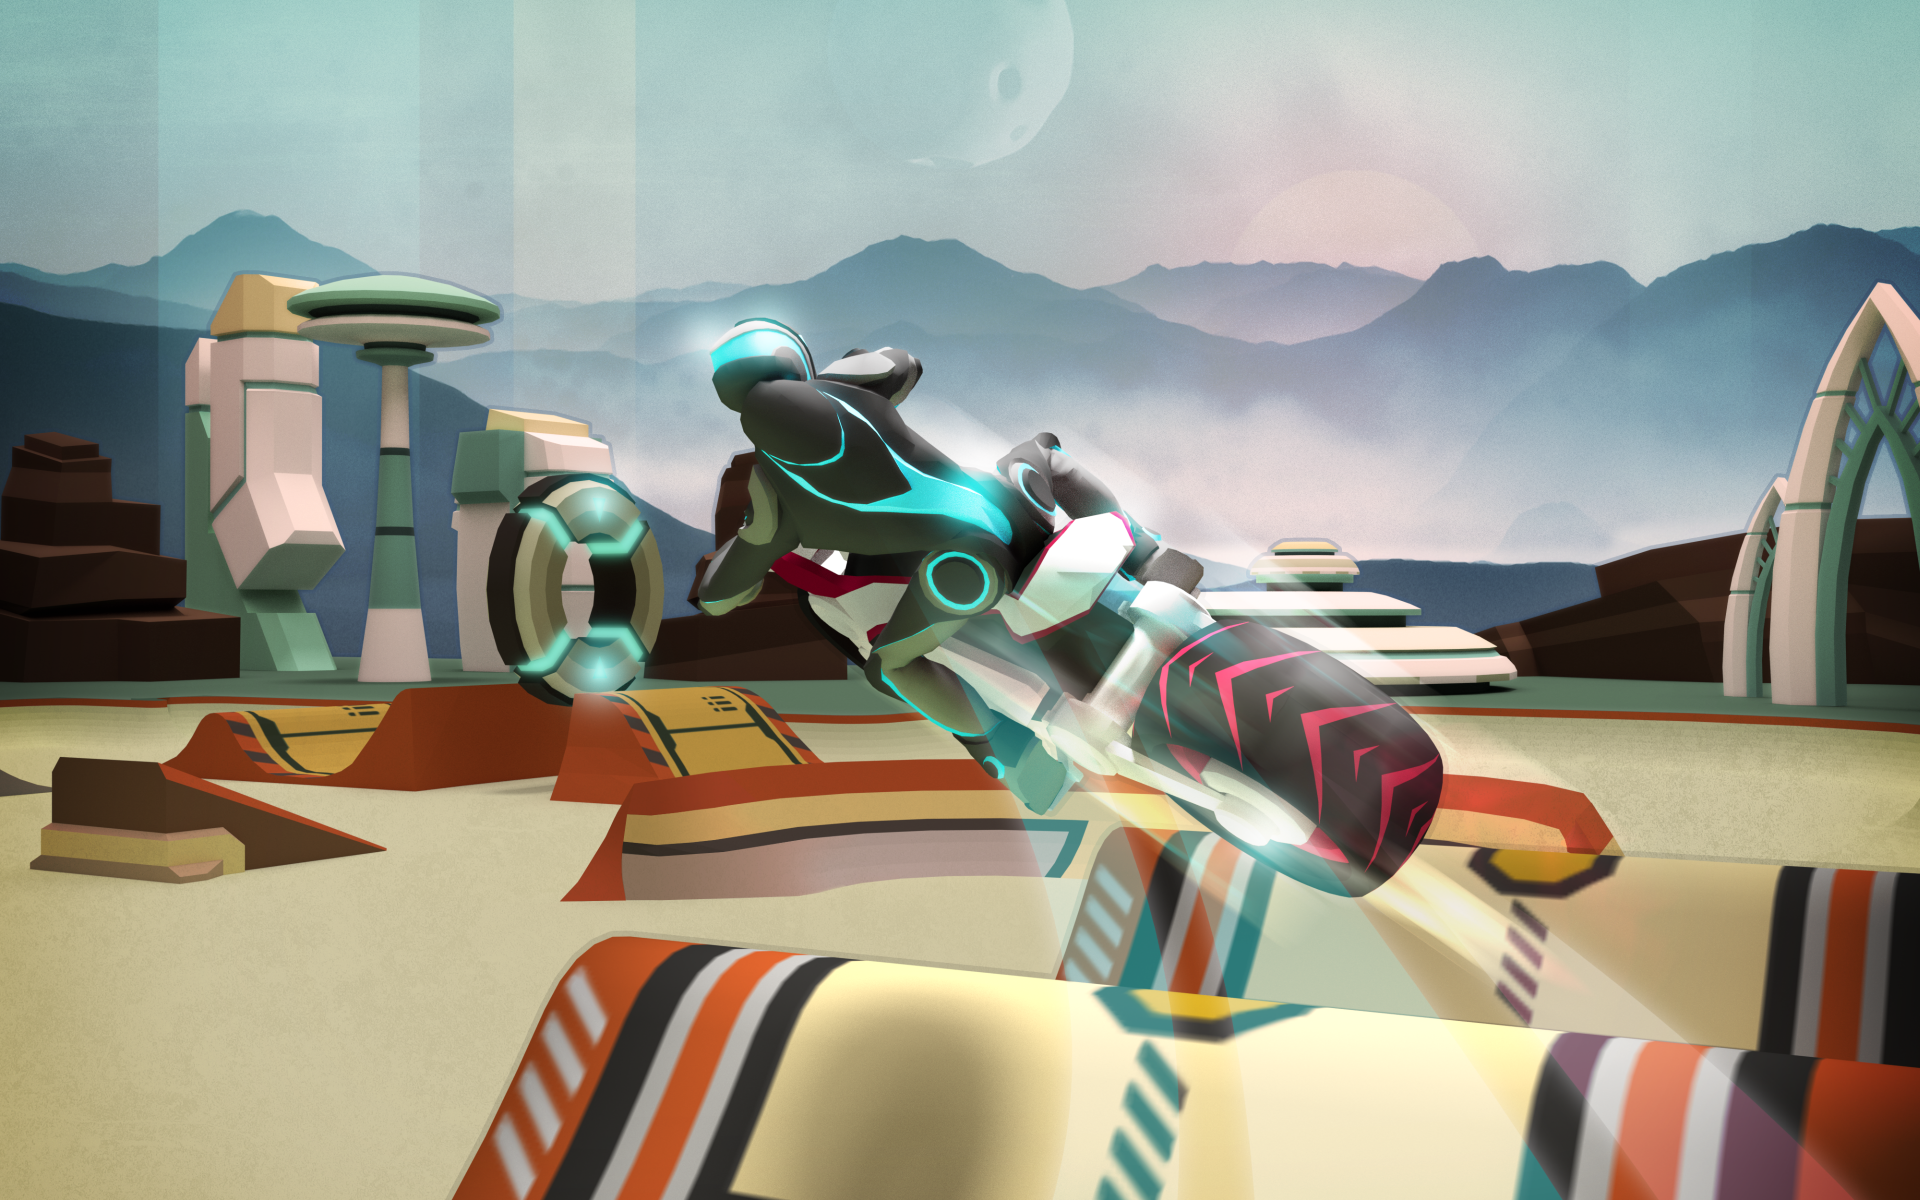 Gravity Rider: グラビティバイクのゲームのキャプチャ